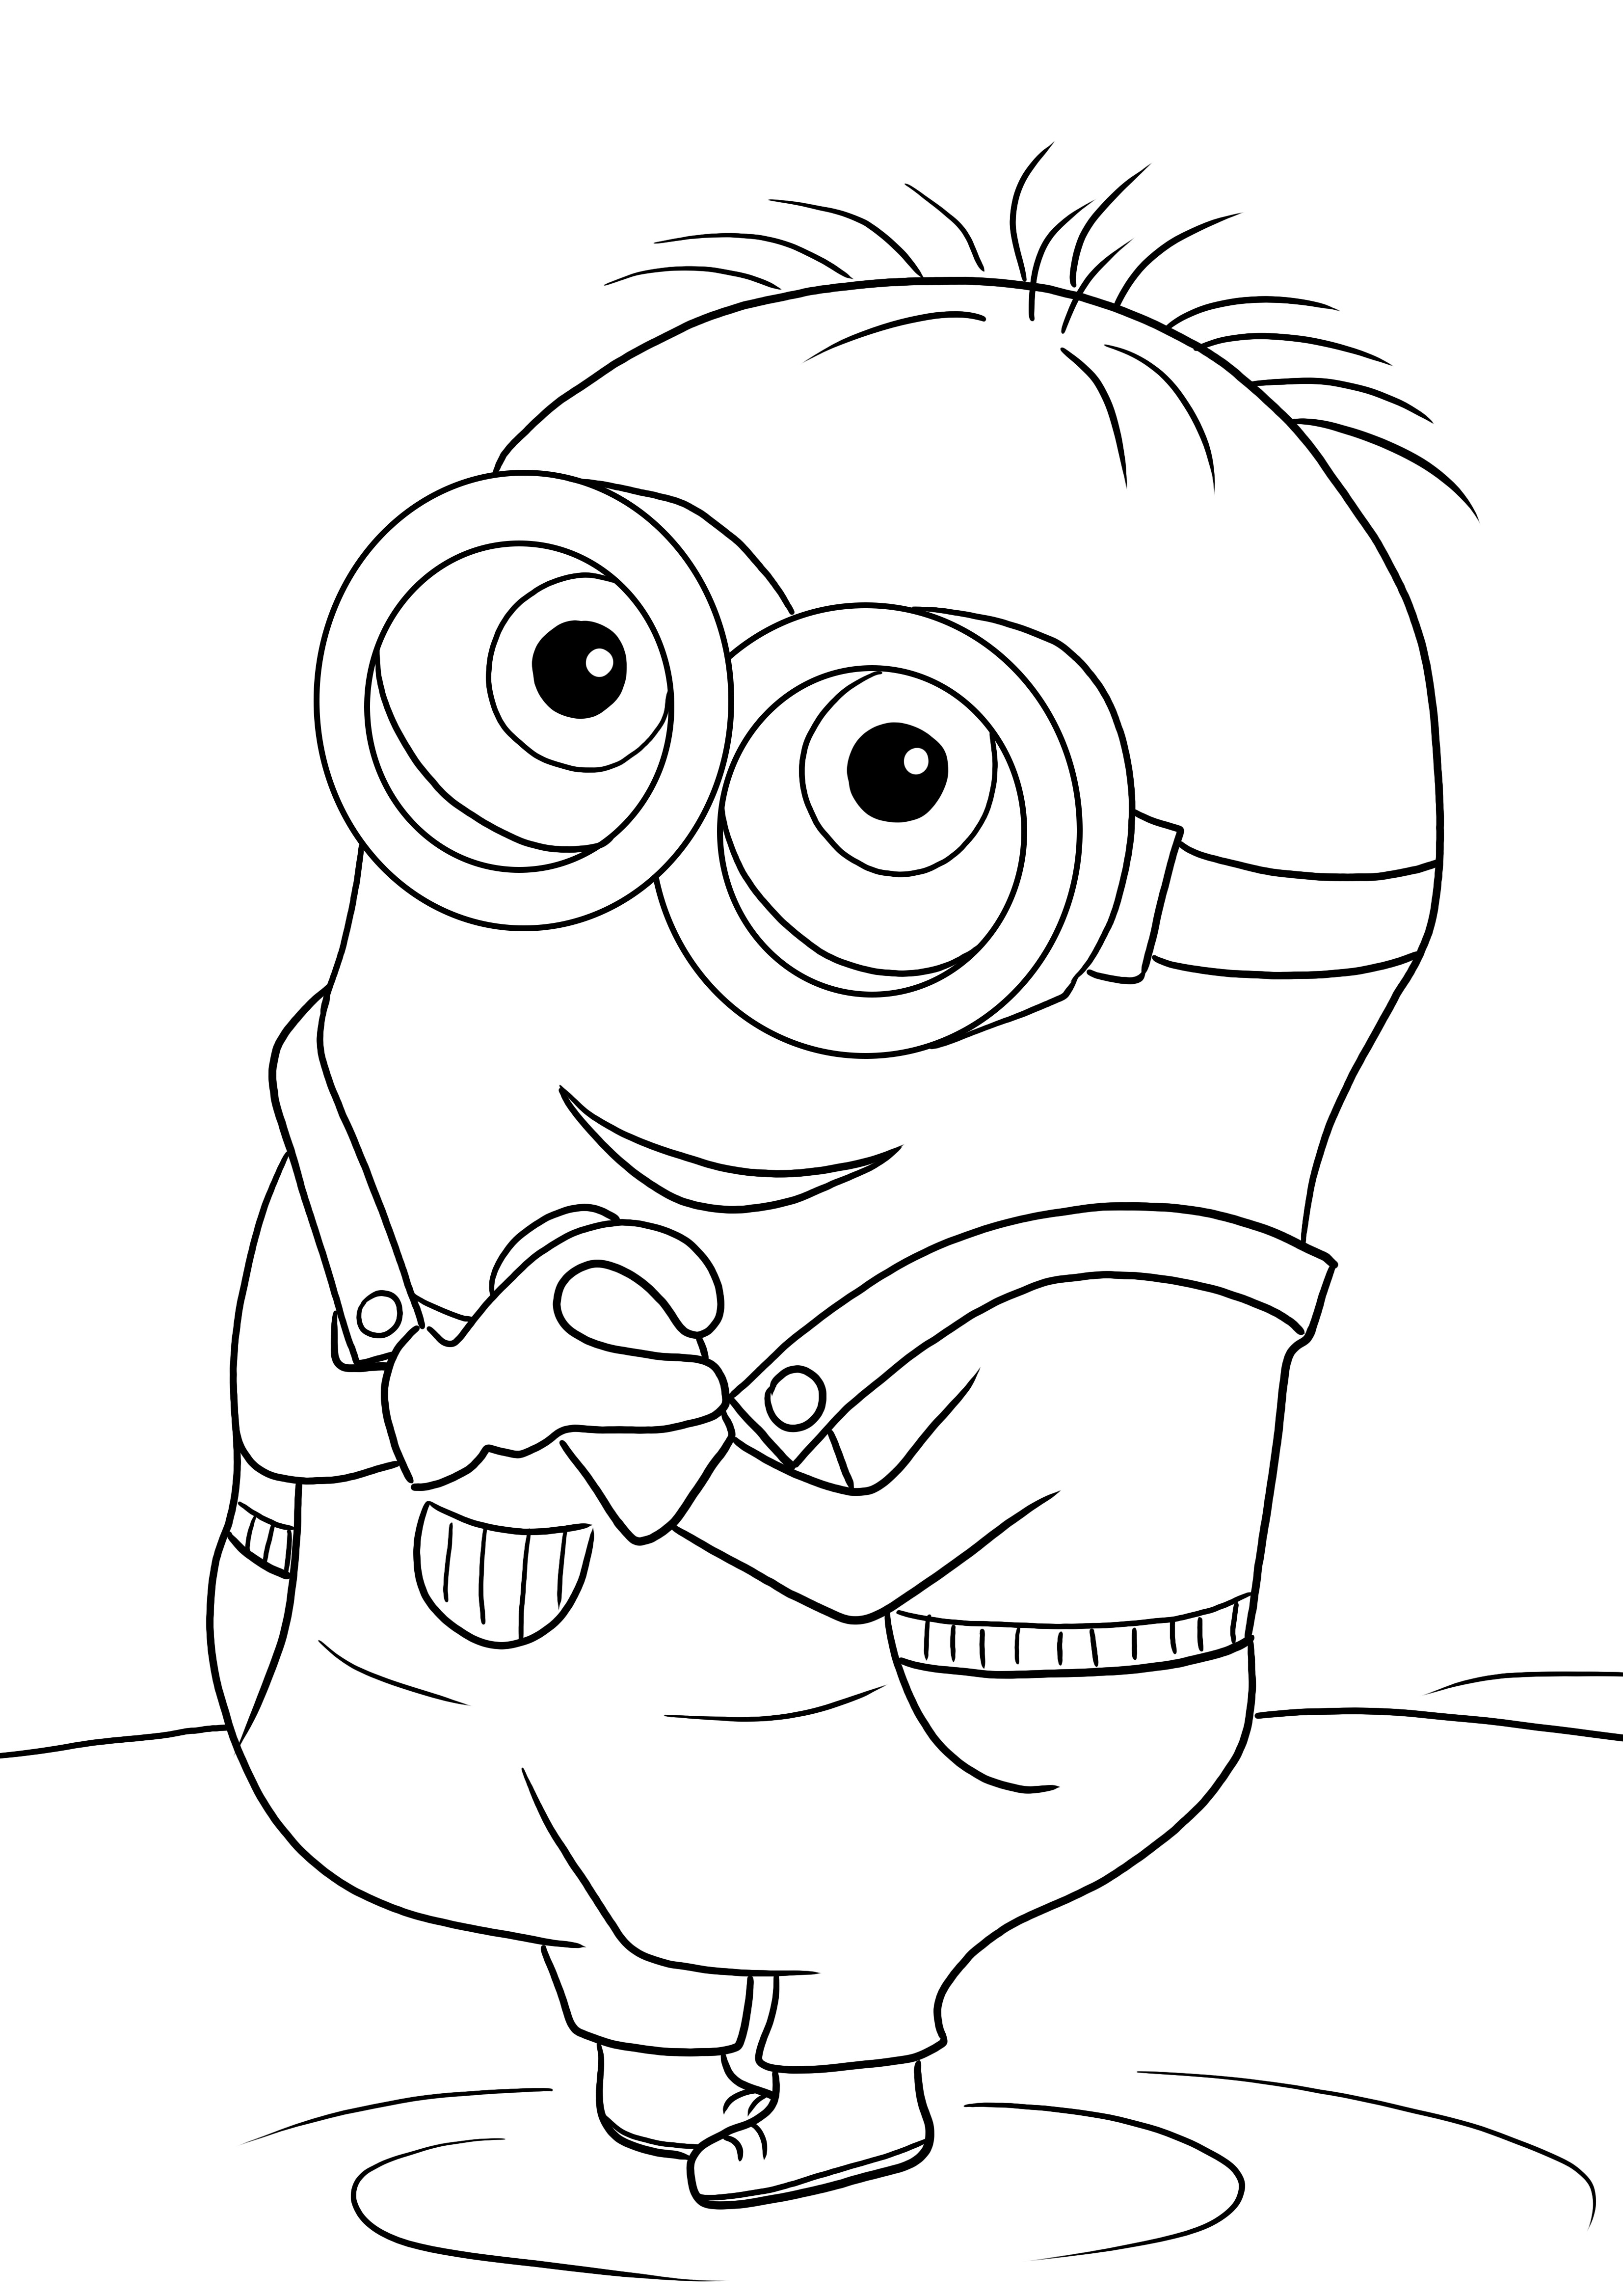 Aquí hay una imagen para colorear gratis de Bob the Minion lindo para descargar o imprimir gratis